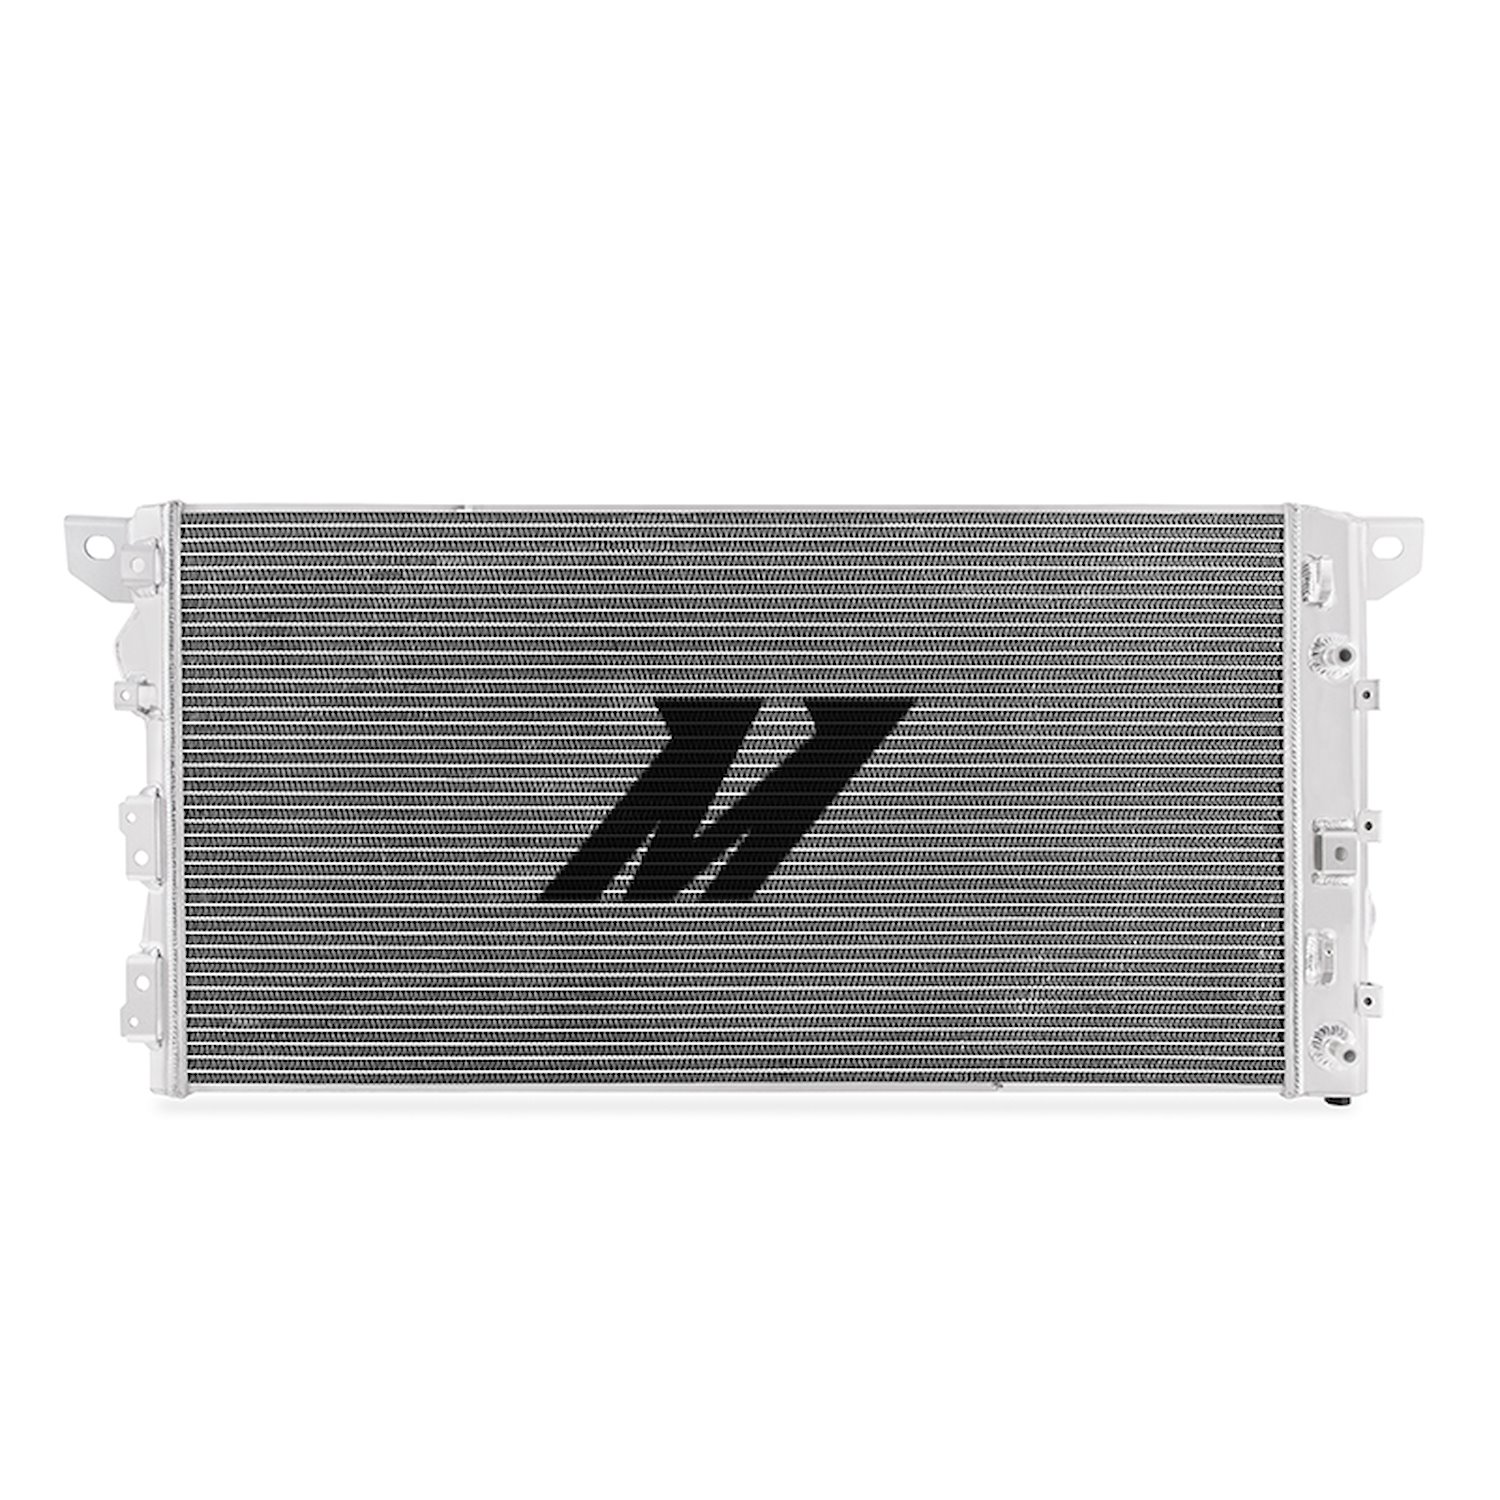 MMRAD-F150-15 Performance Aluminum Radiator, fits Ford F-150 2015-2020